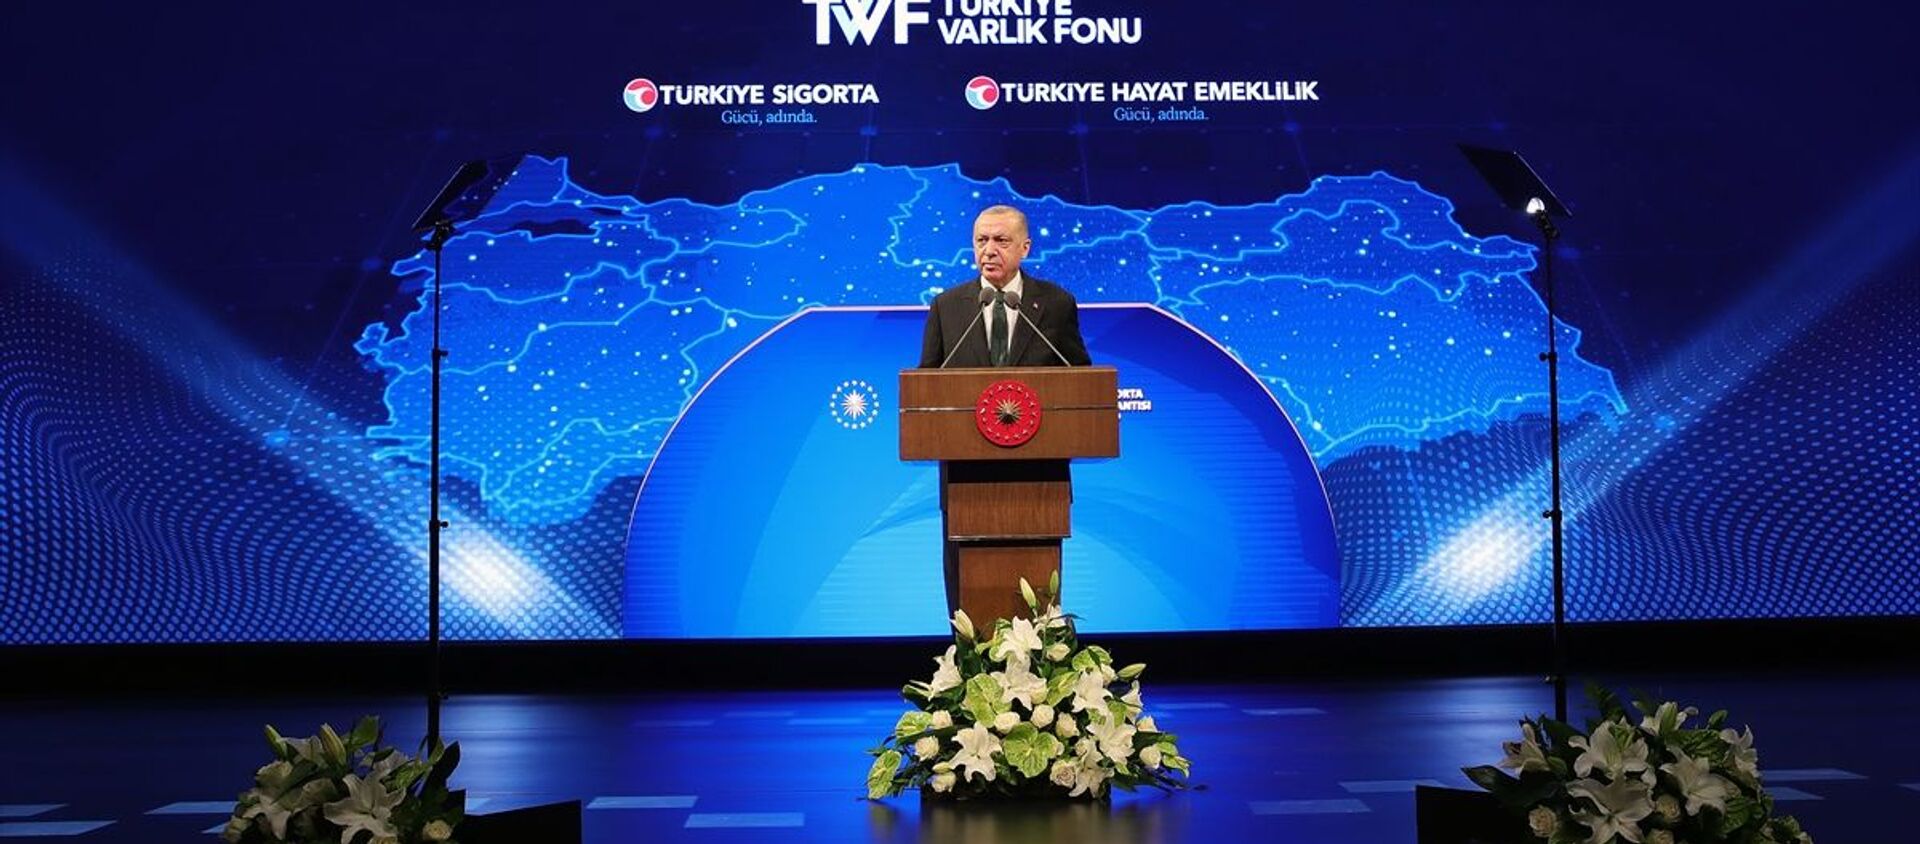 Erdoğan: Ülkemizin en büyük sigorta ve emeklilik şirketini tesis ediyoruz - Sputnik Türkiye, 1920, 07.09.2020